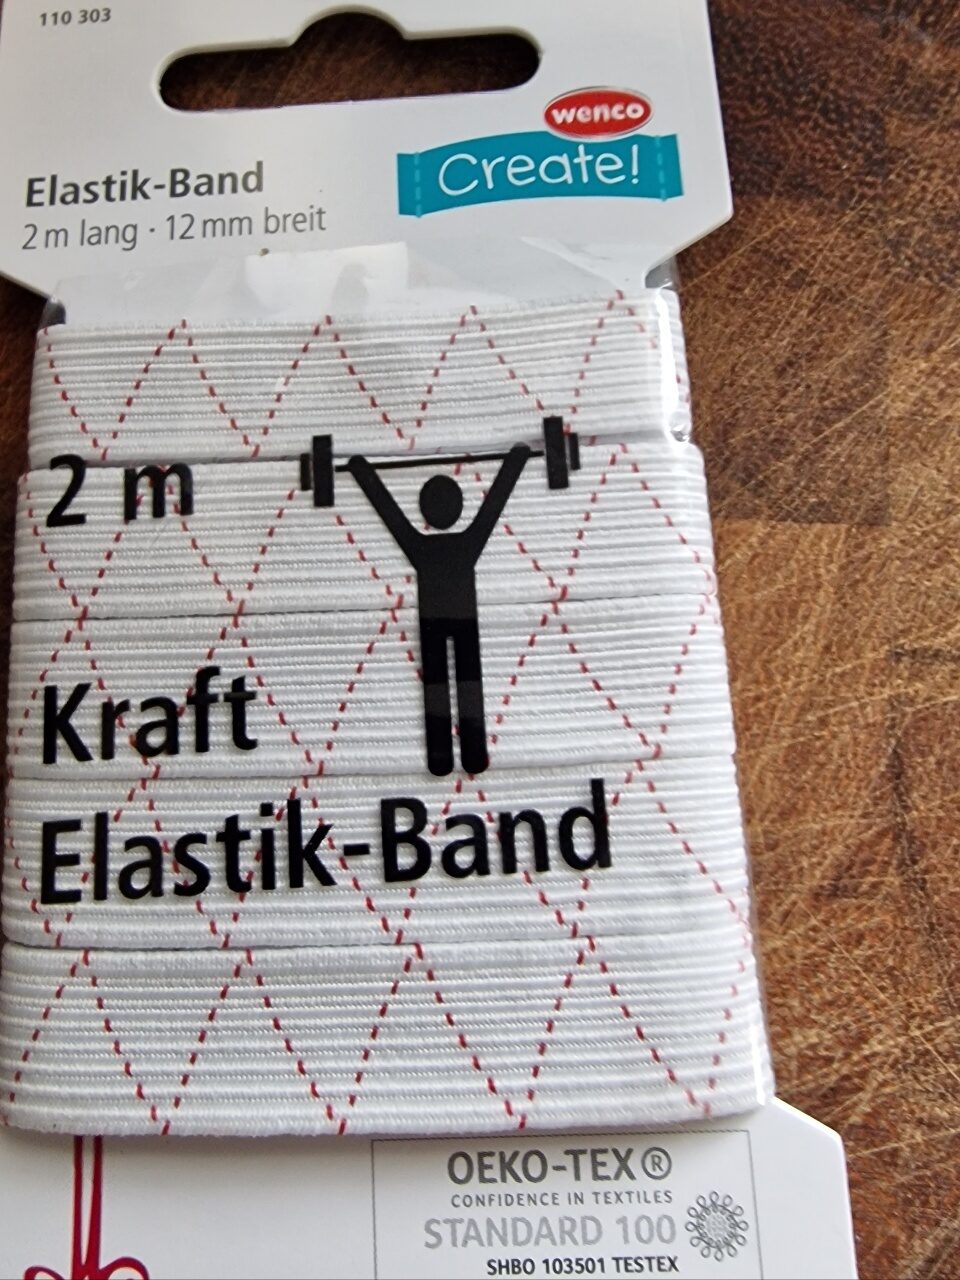 Elasttik Band - Produit - de